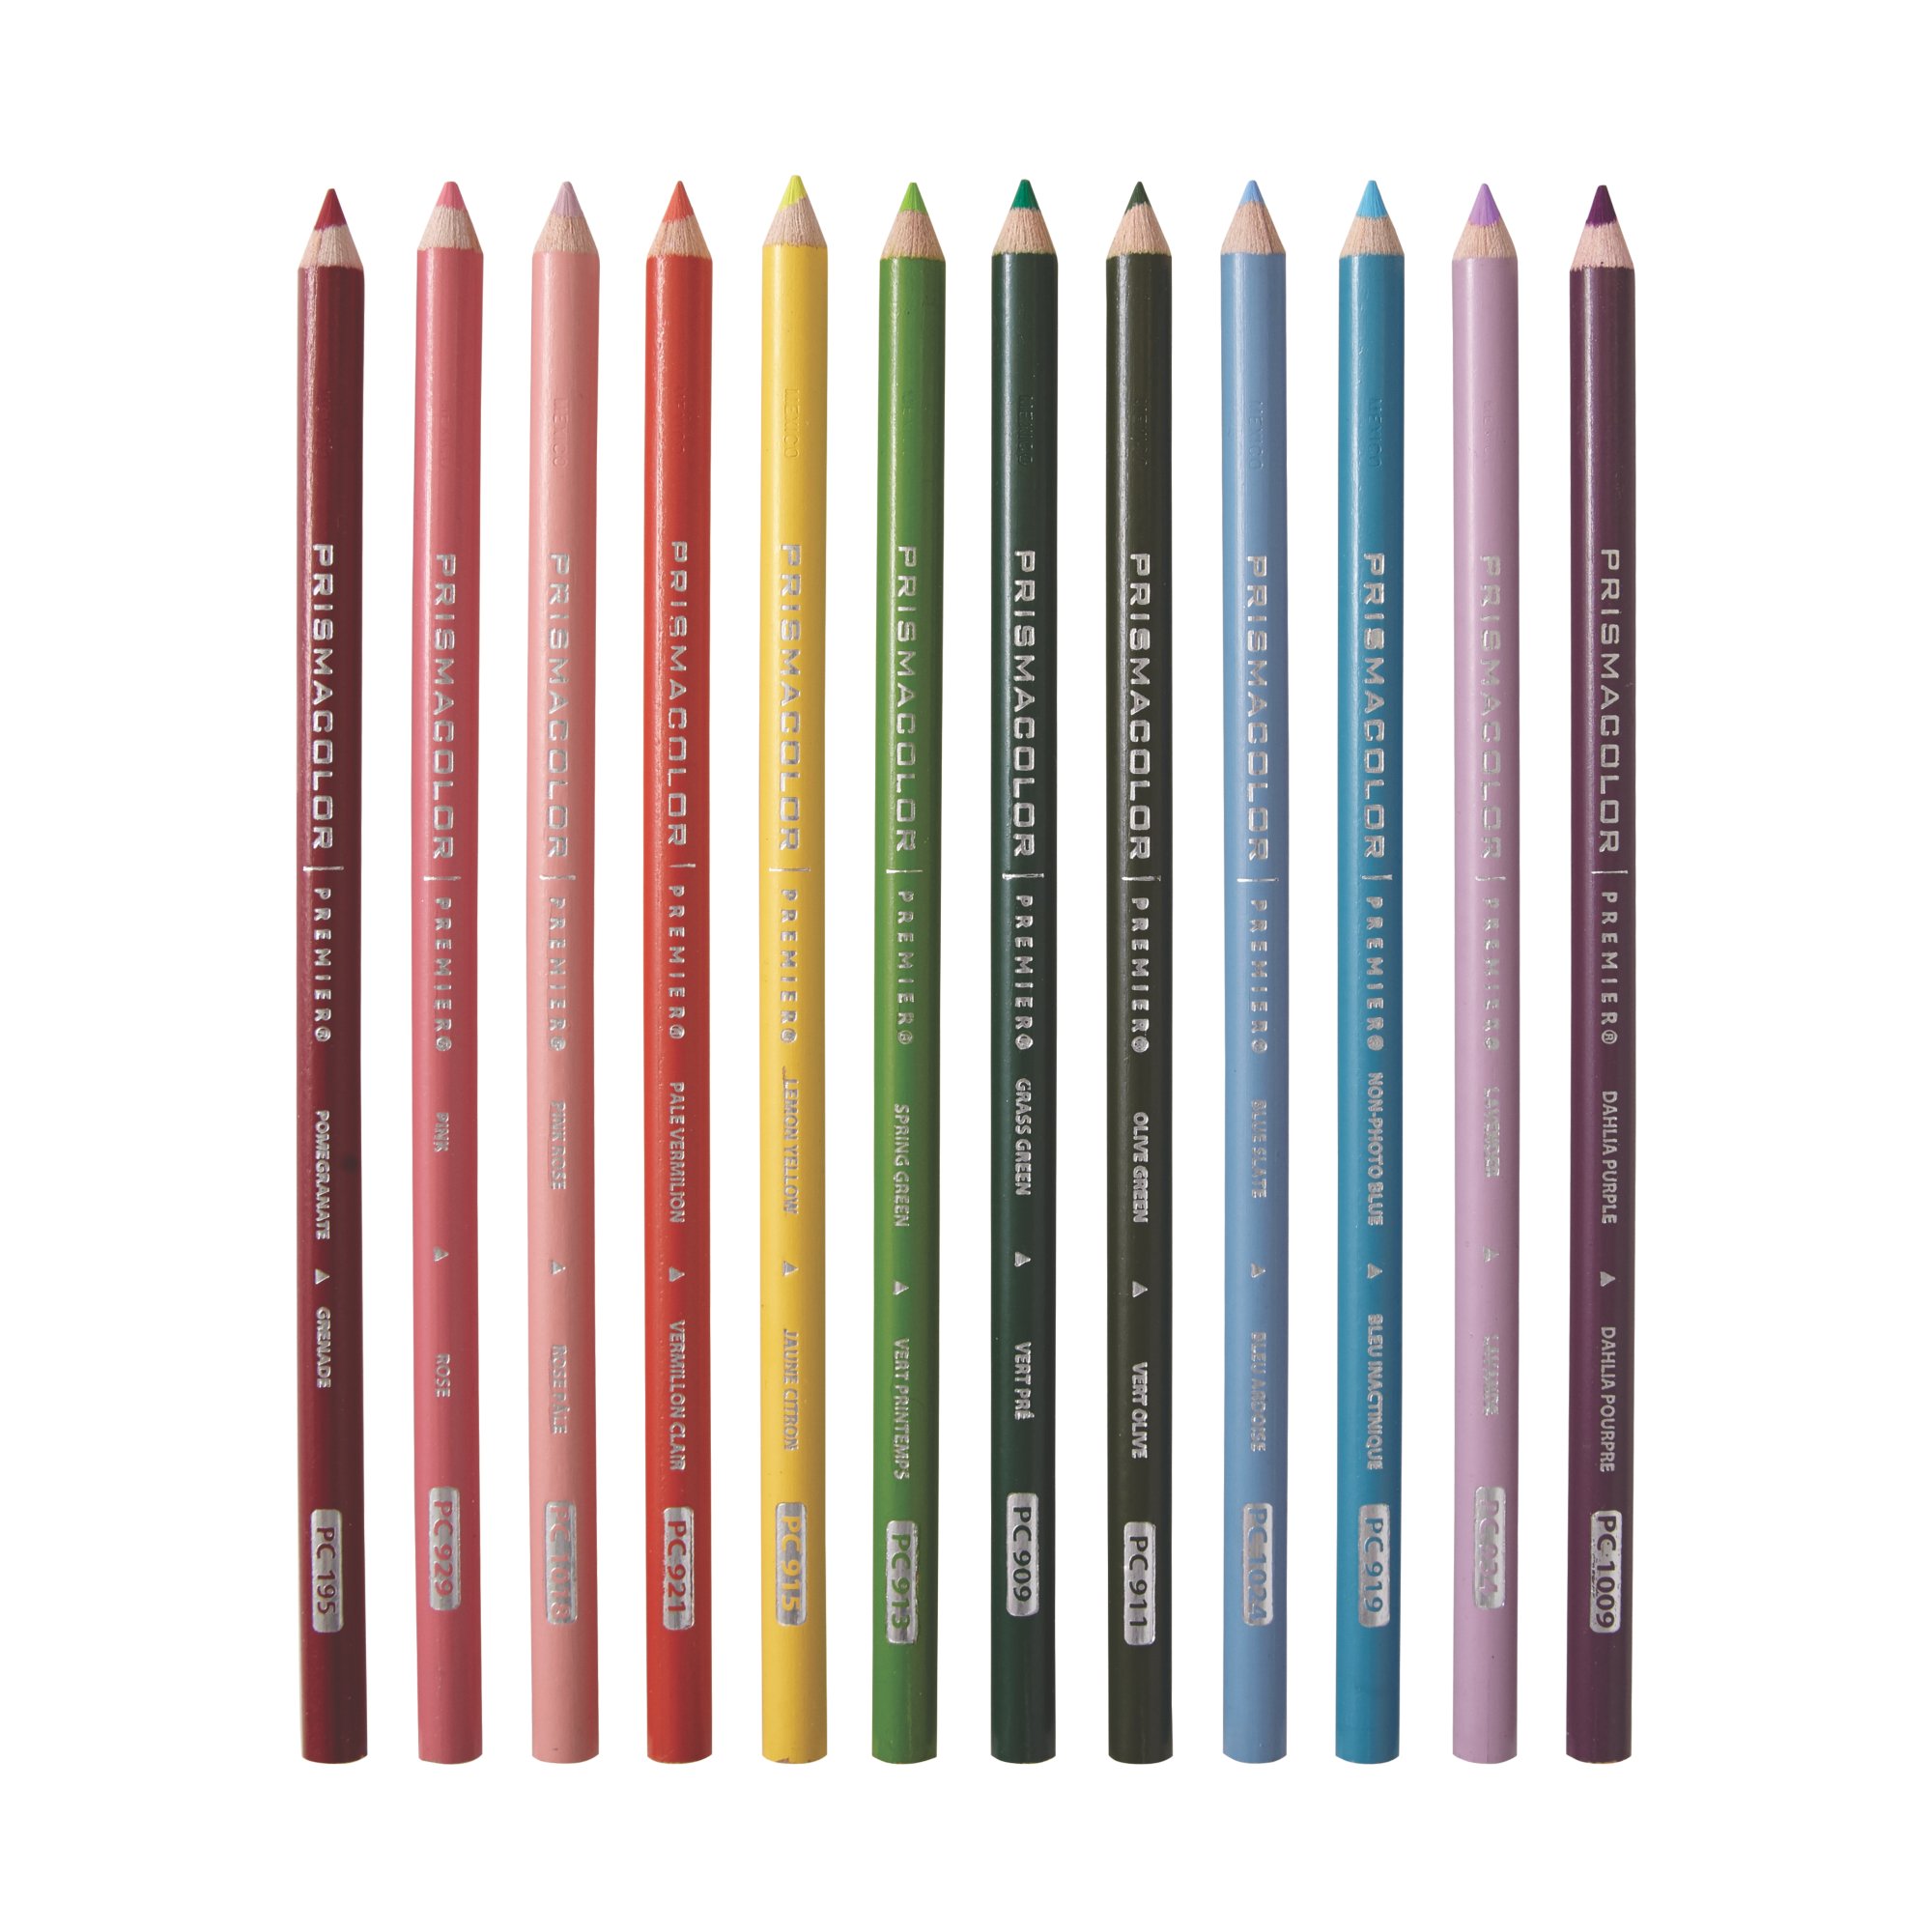 Prismacolour Colourless Blending Pencil - Single Pencil, Australia —  Mercurius